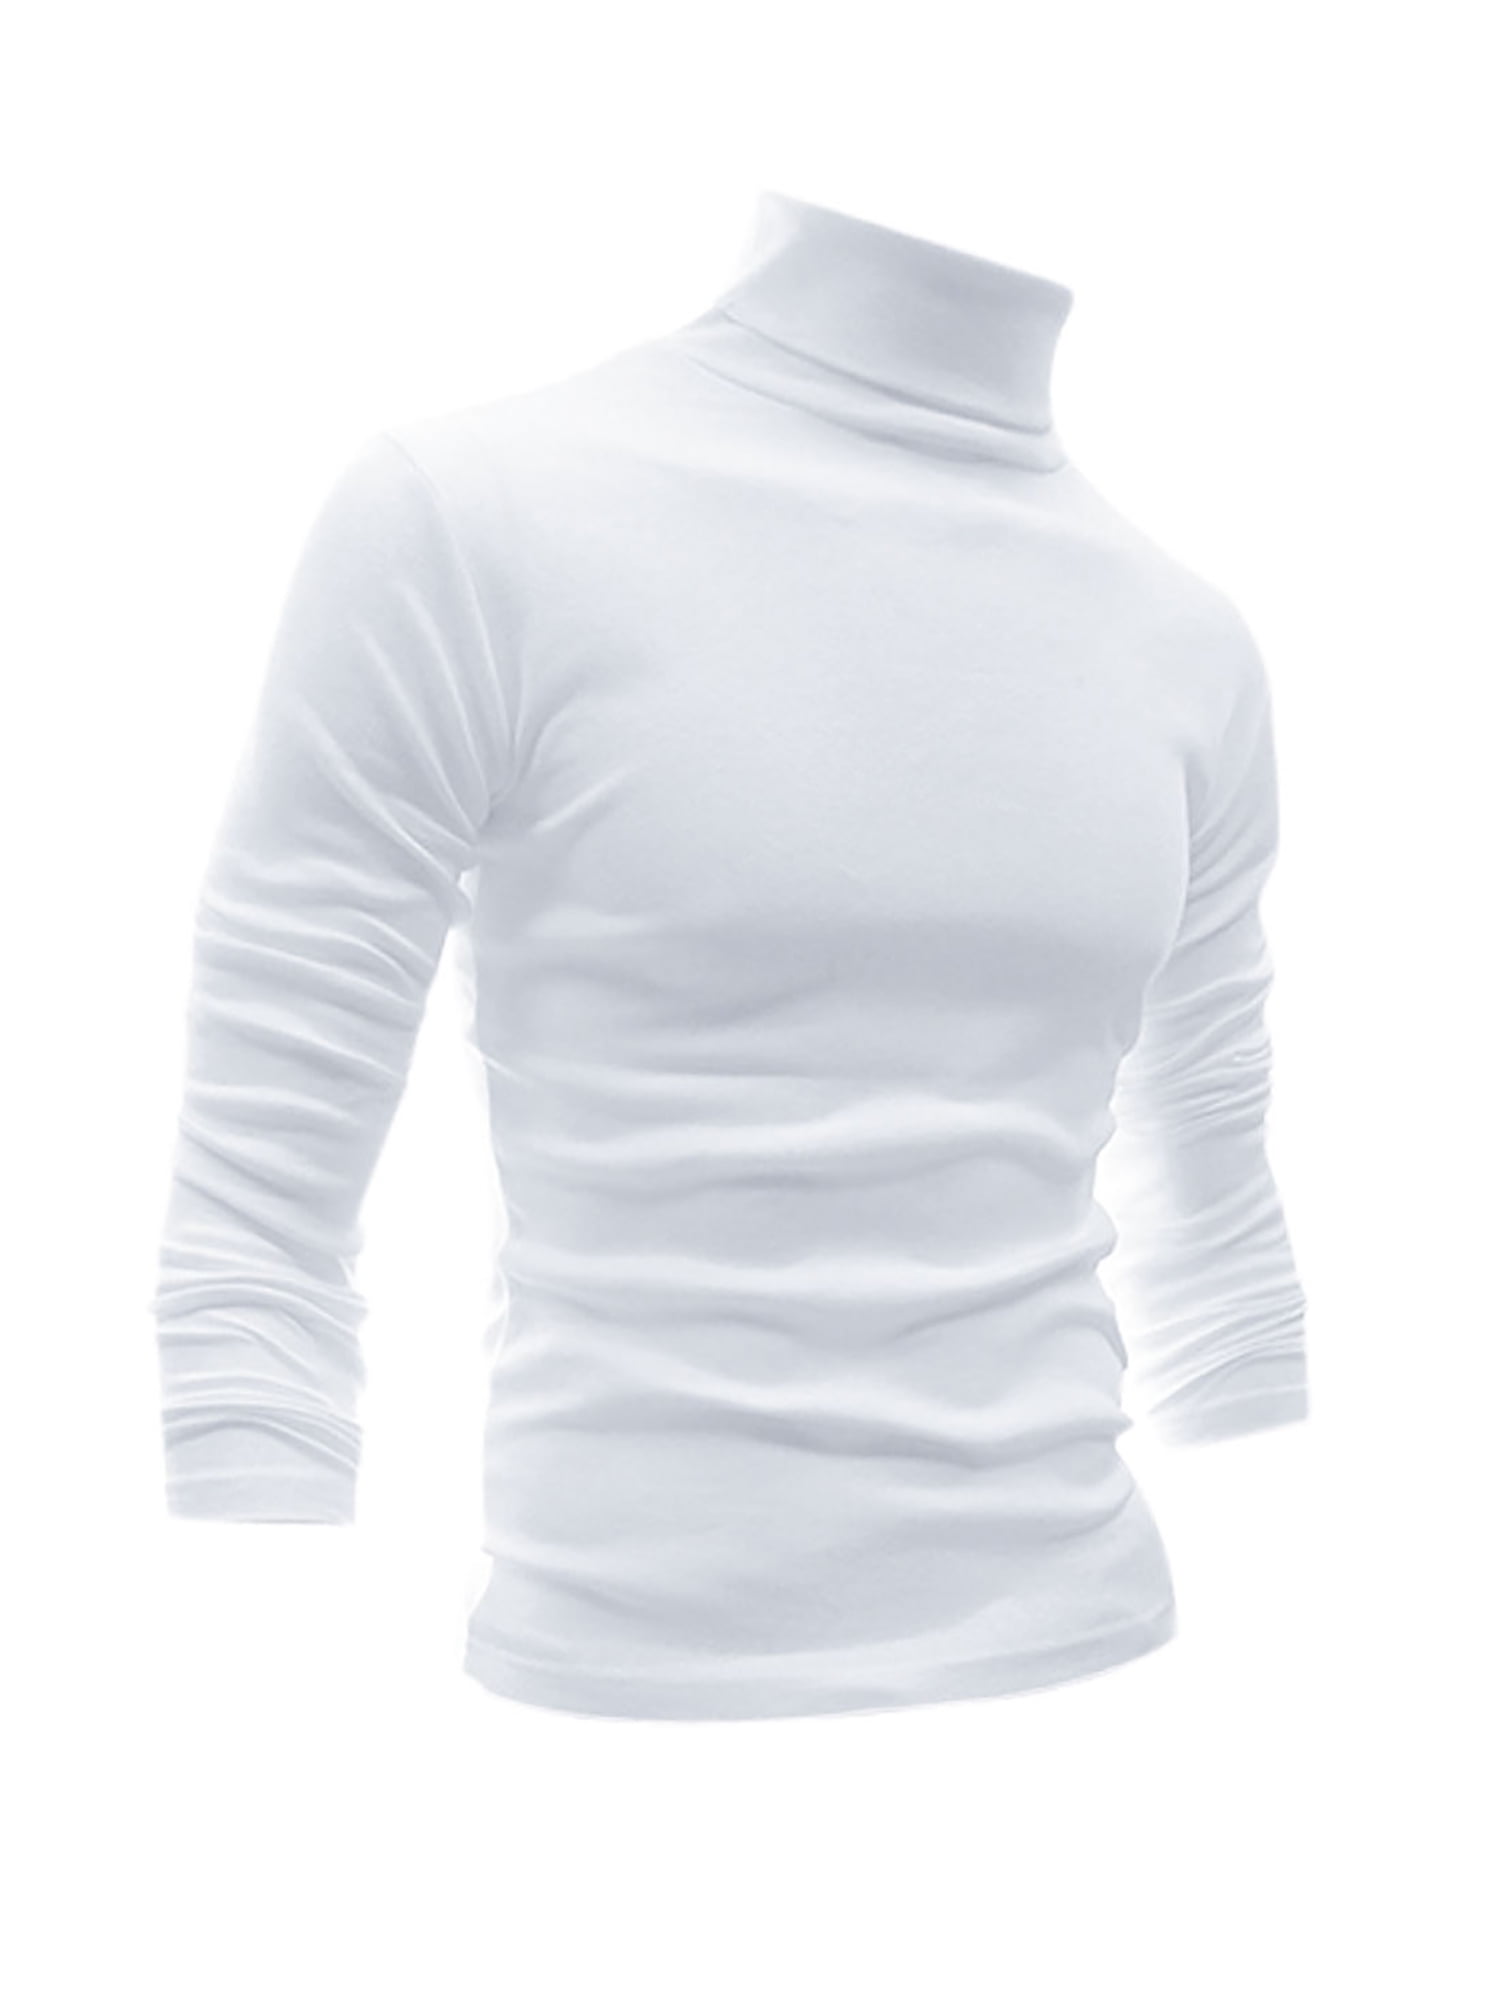 white polo neck long sleeve top